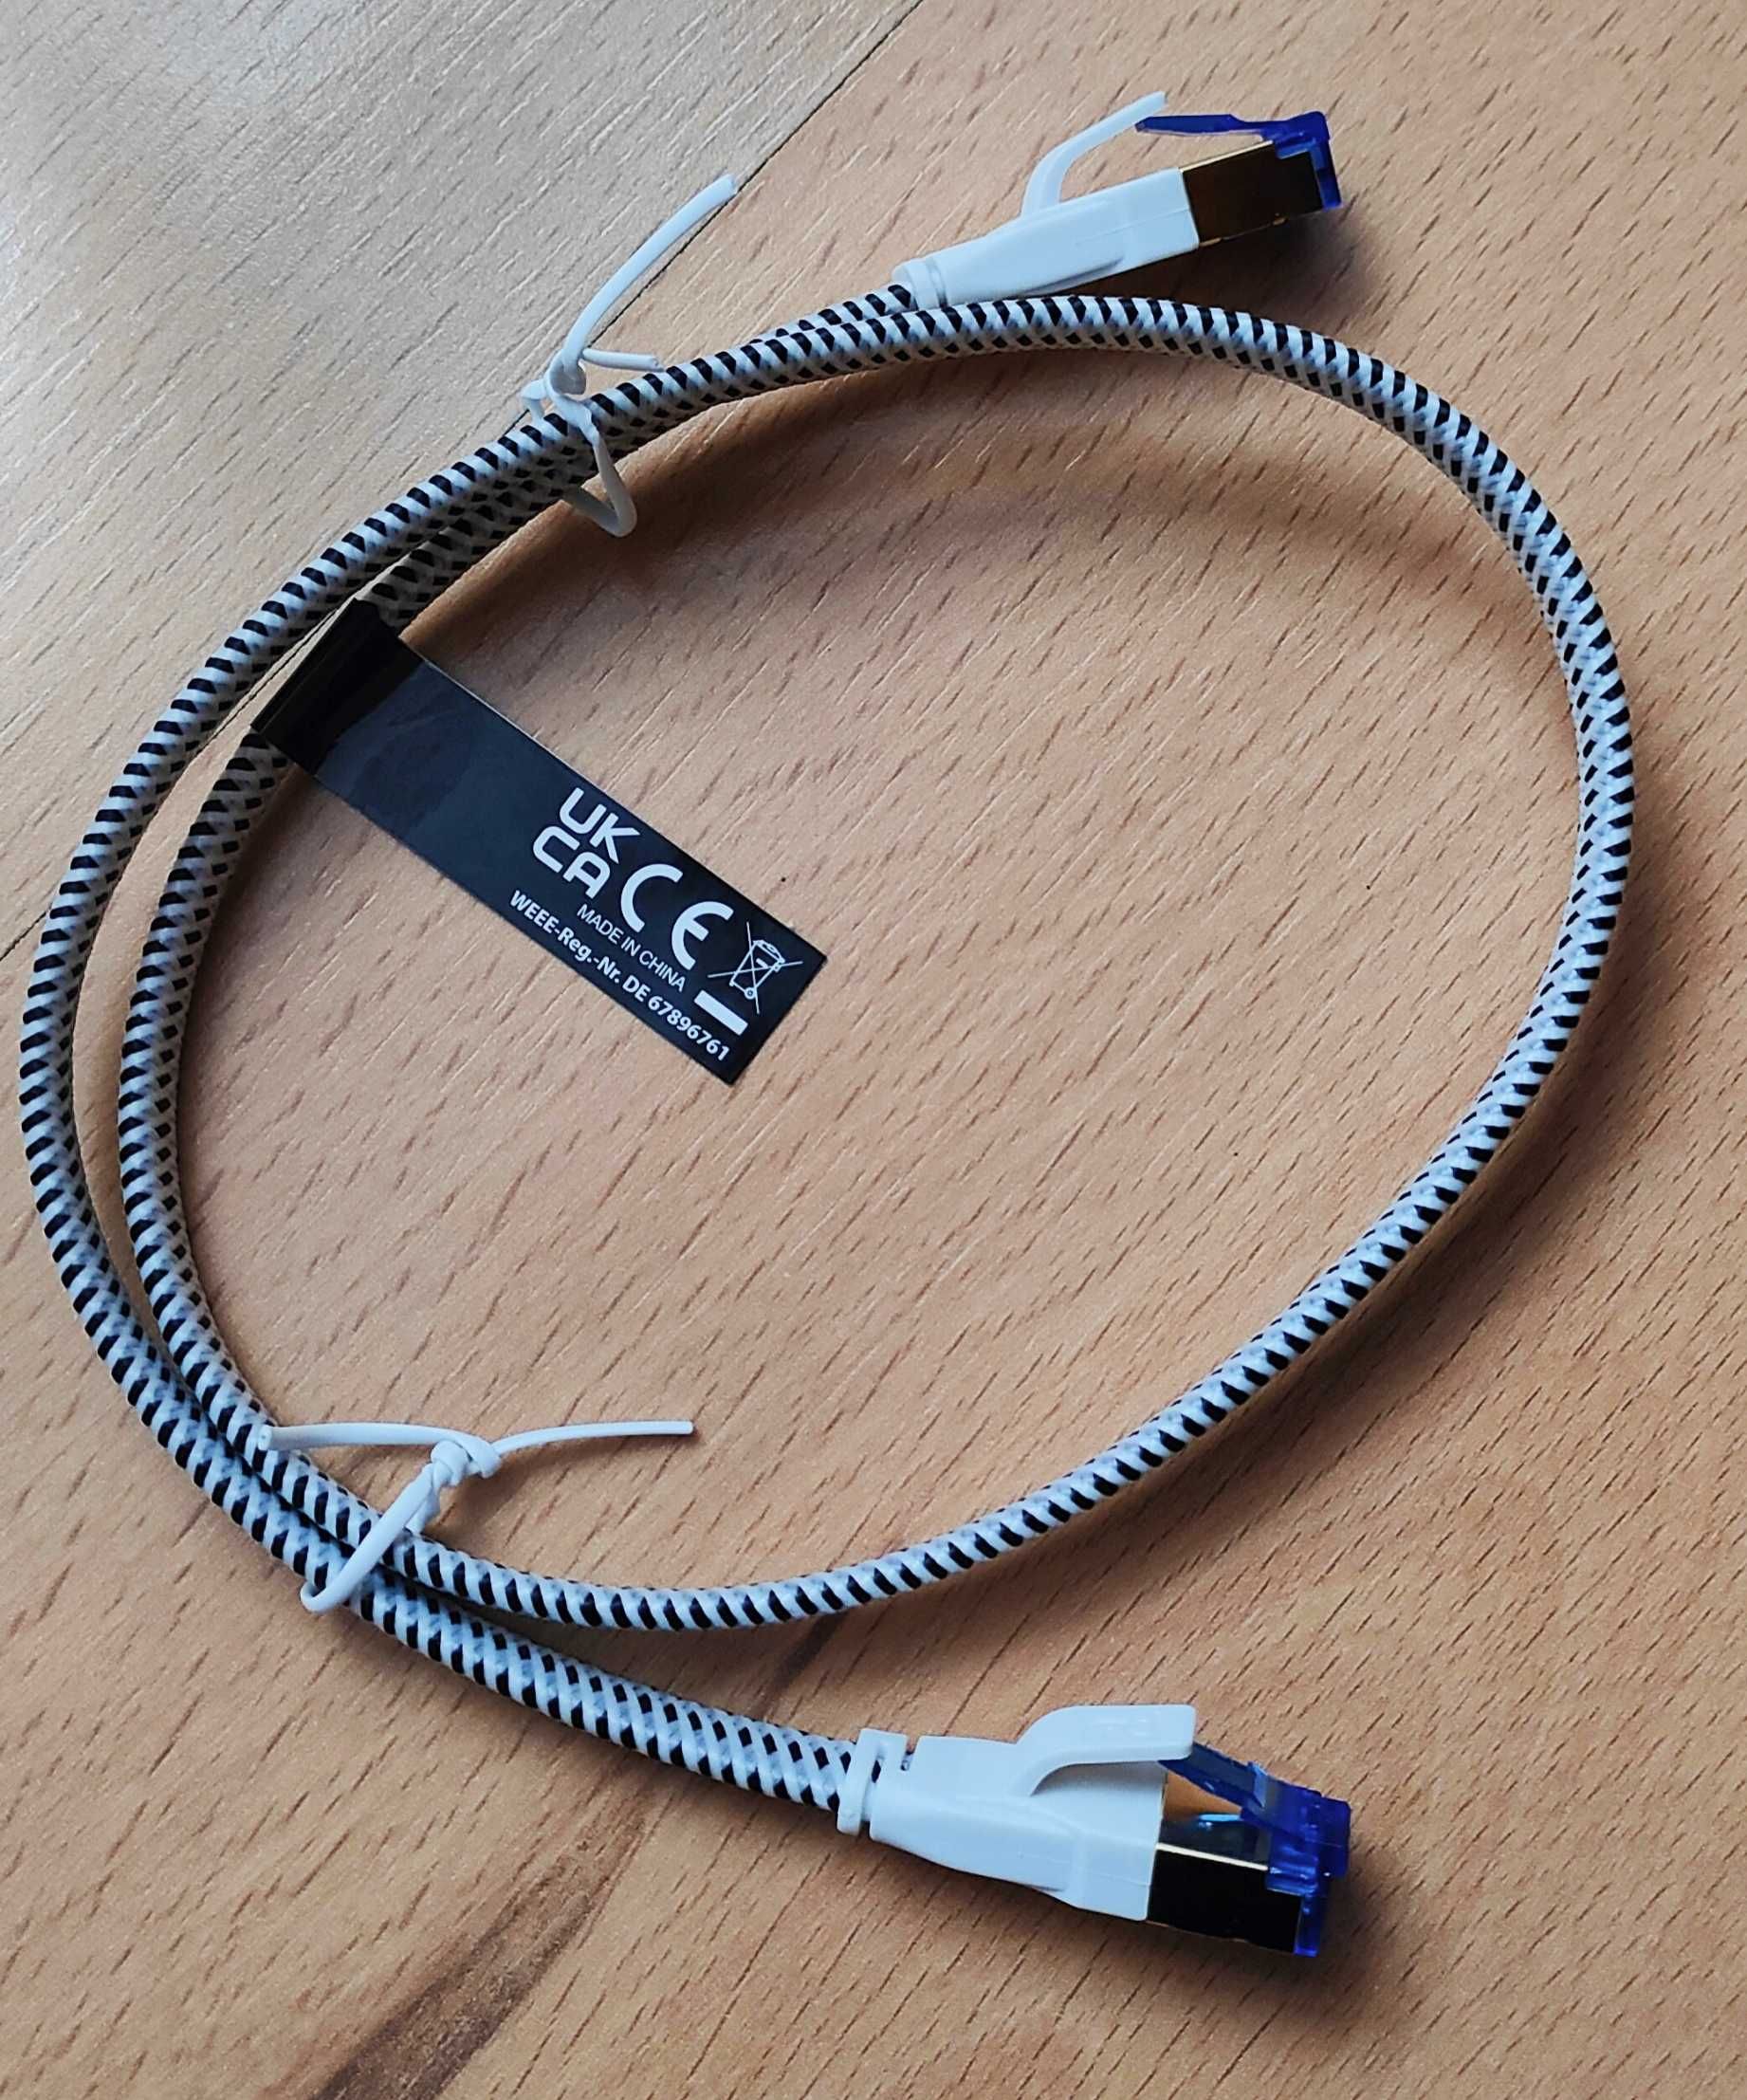 Primewire - 0,5 m płaski kabel sieciowy Cat 8.1 RJ45